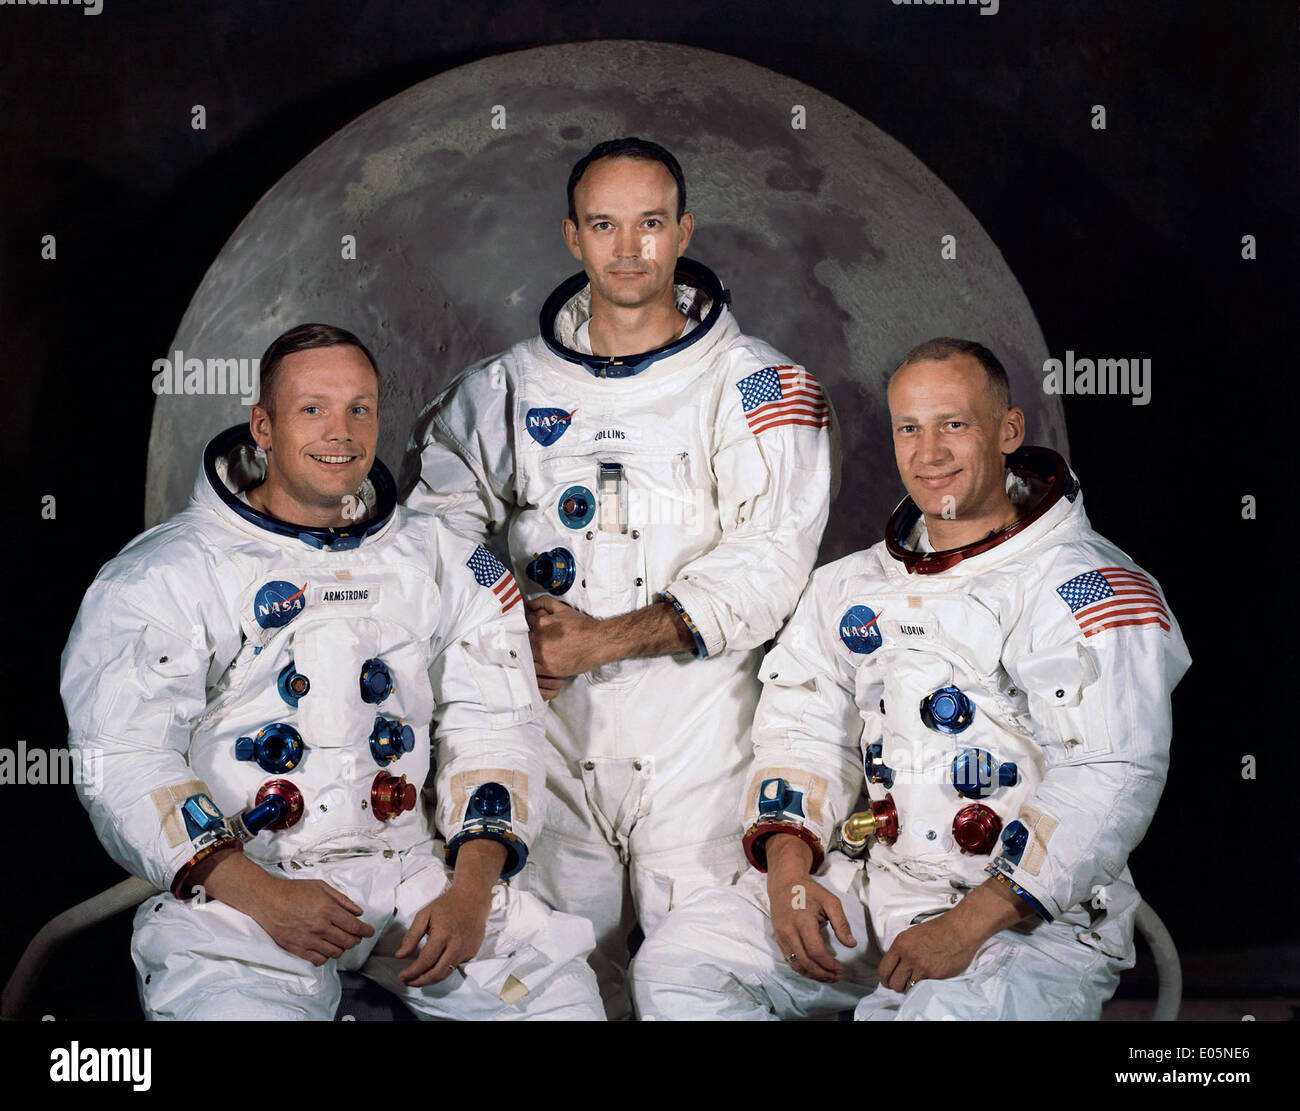 Portrait of Apollo 11 crewmembers Stock Photo